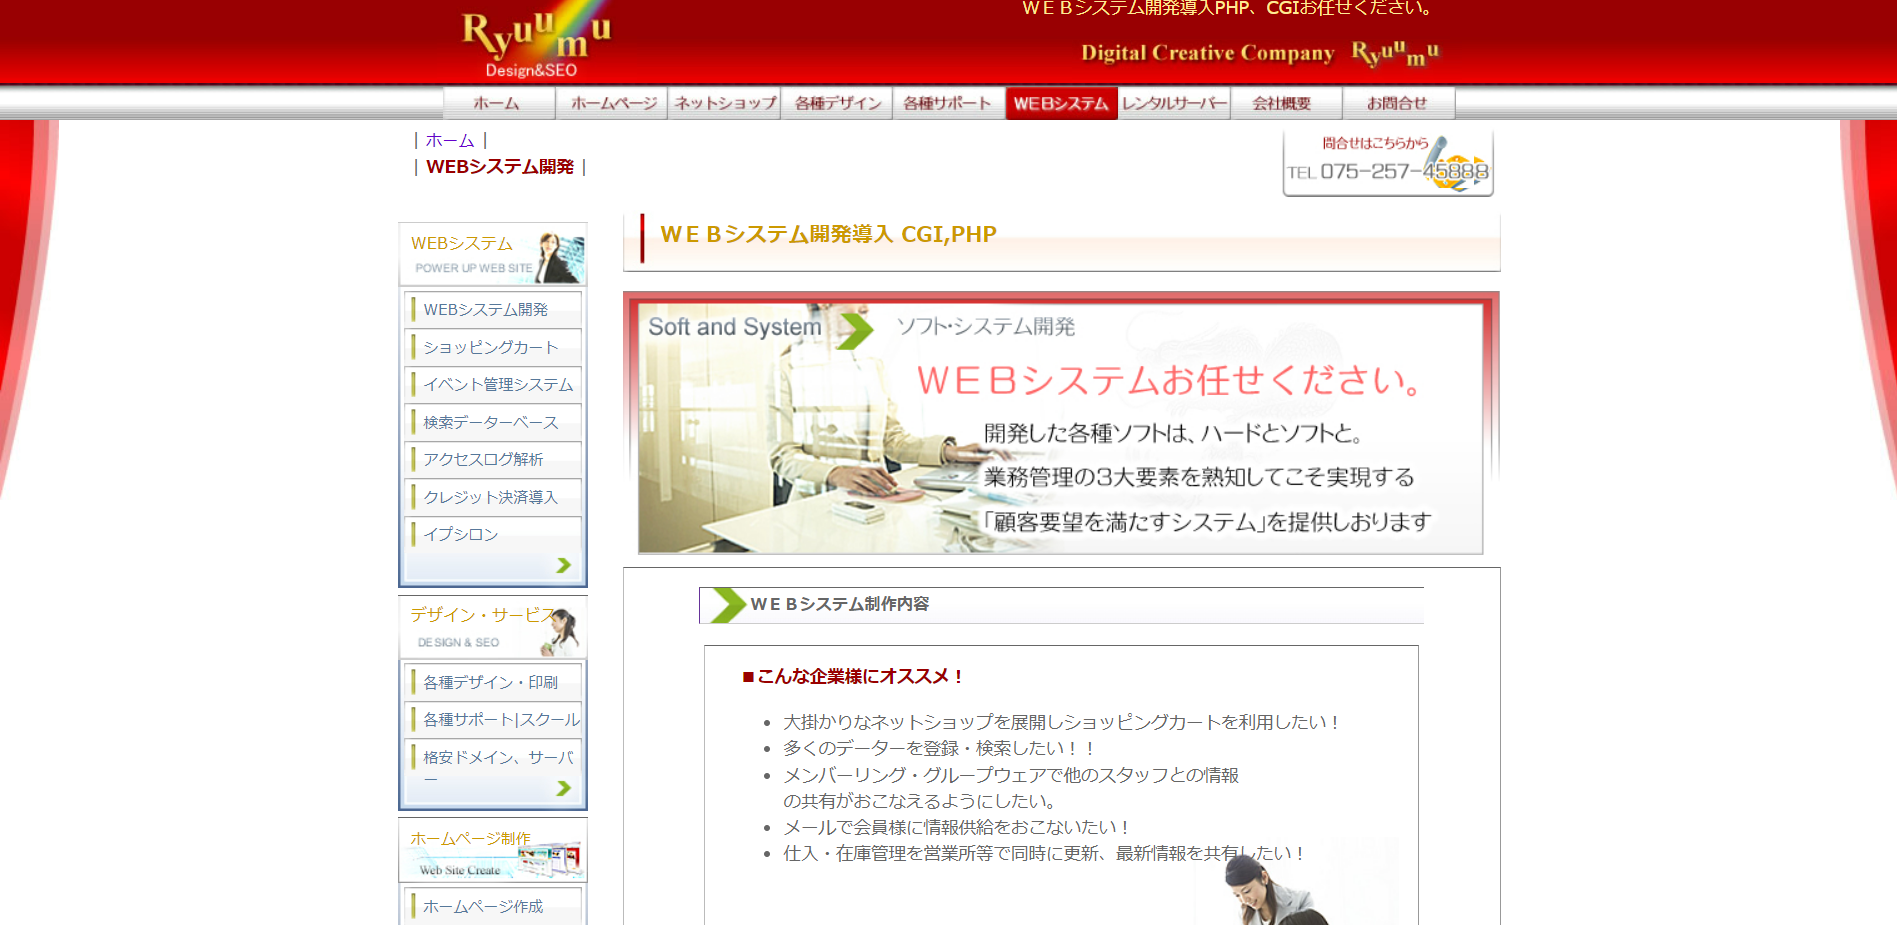 リュウム株式会社のリュウム株式会社:Web広告サービス